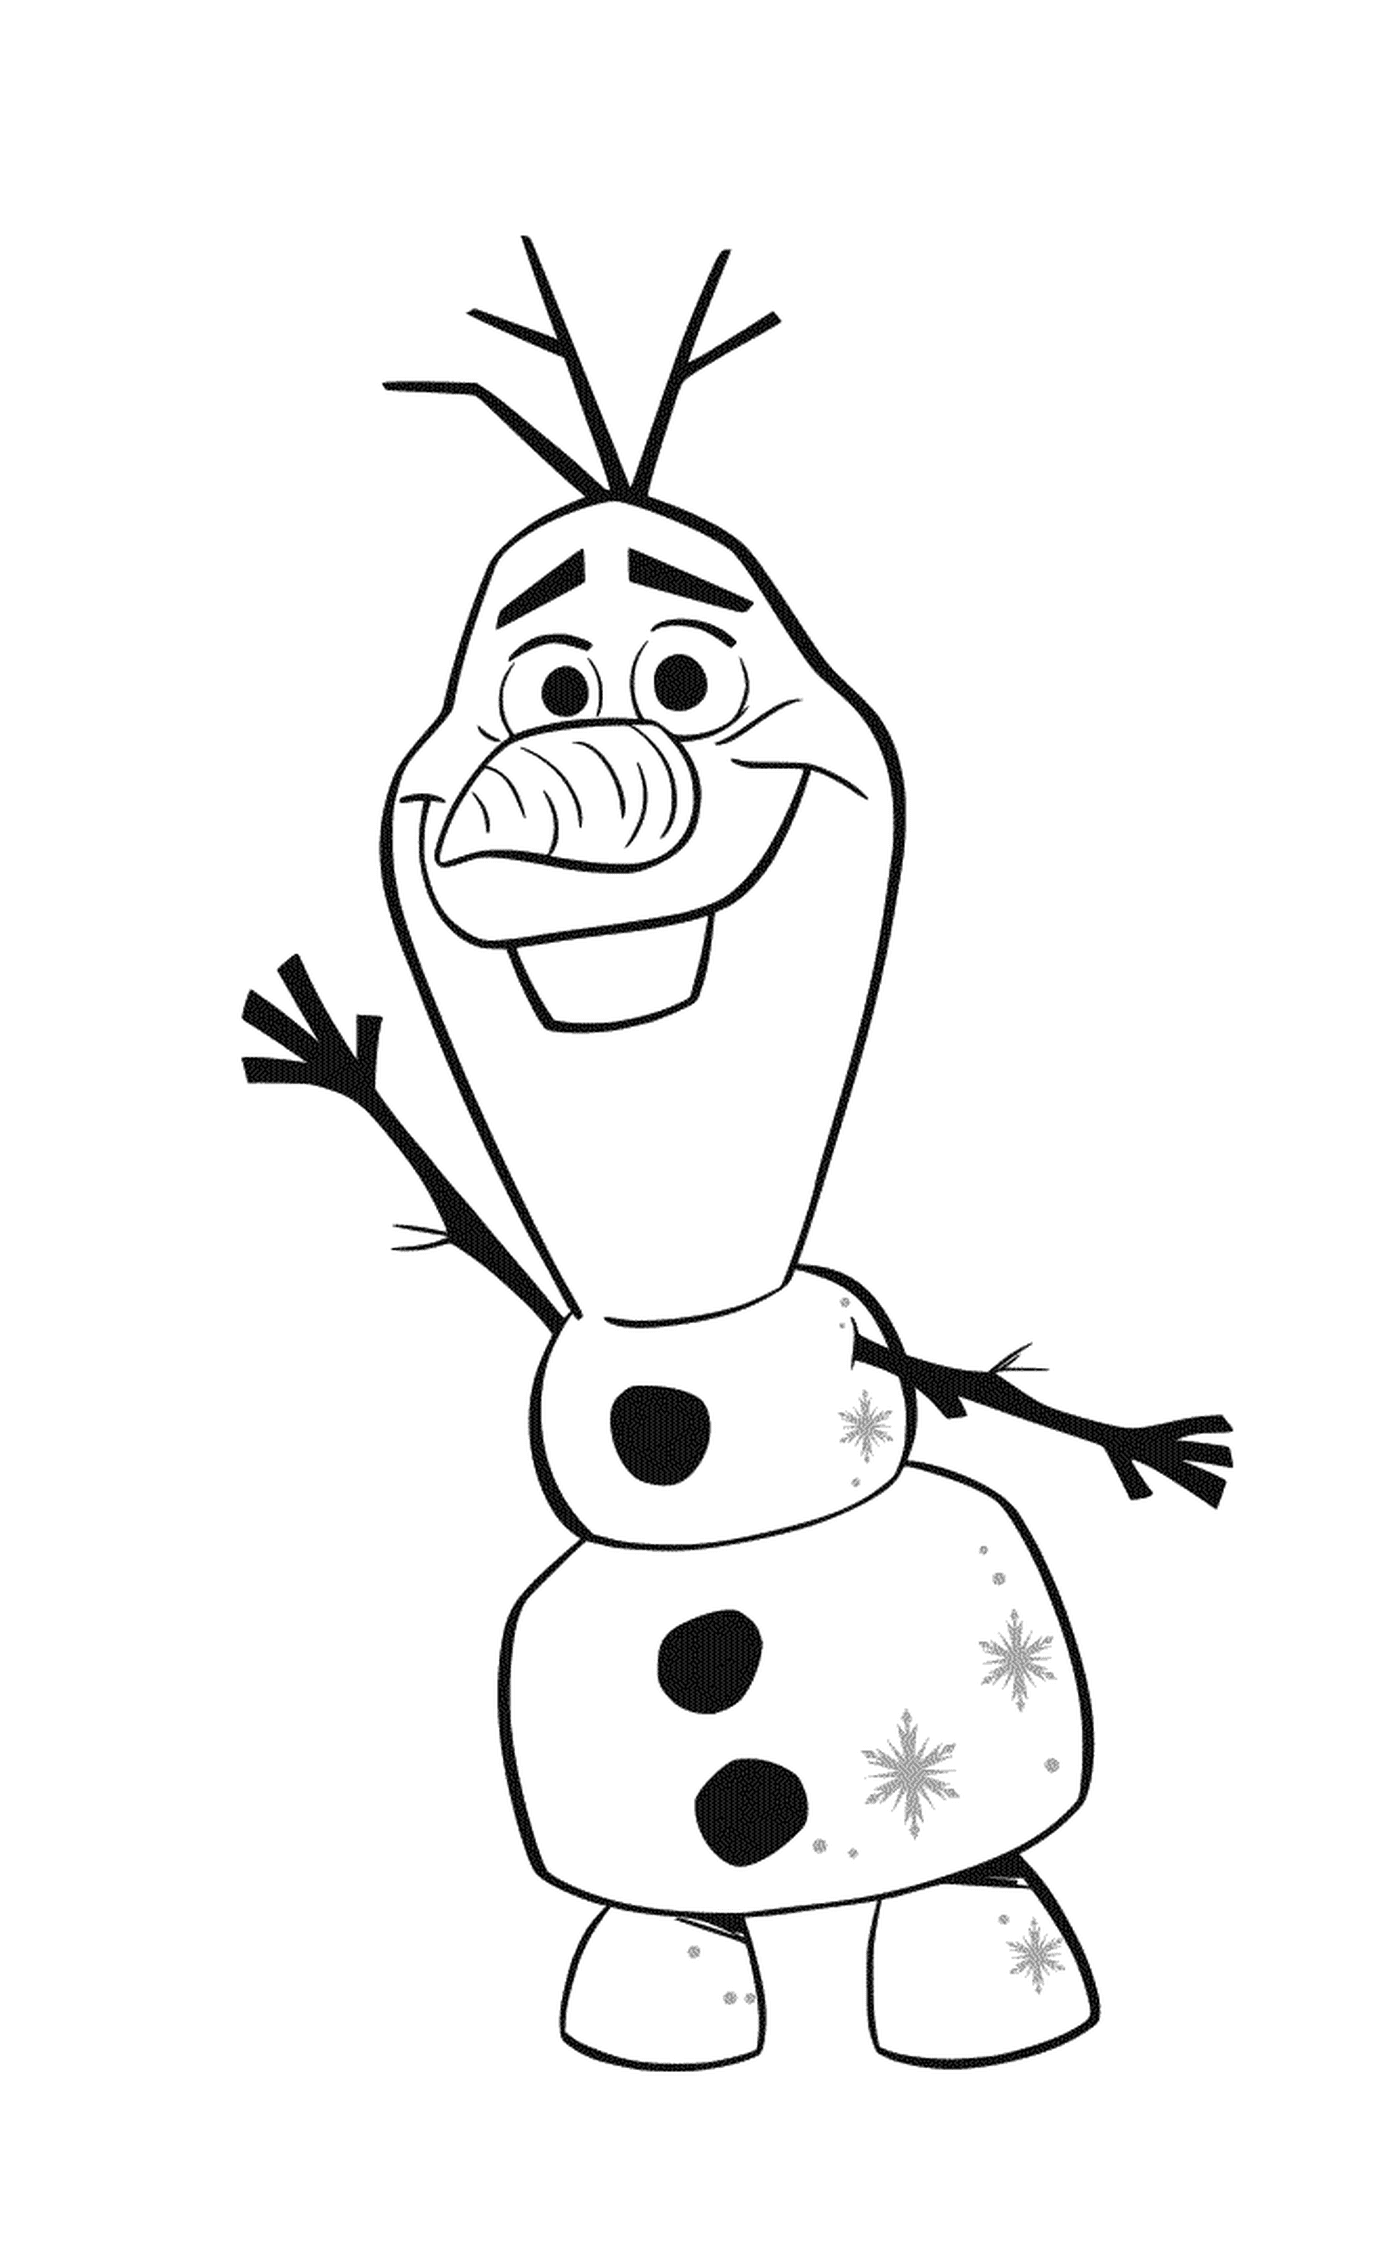  Olaf, der animierte Schneemann von Elsa und Annas Kindheit 